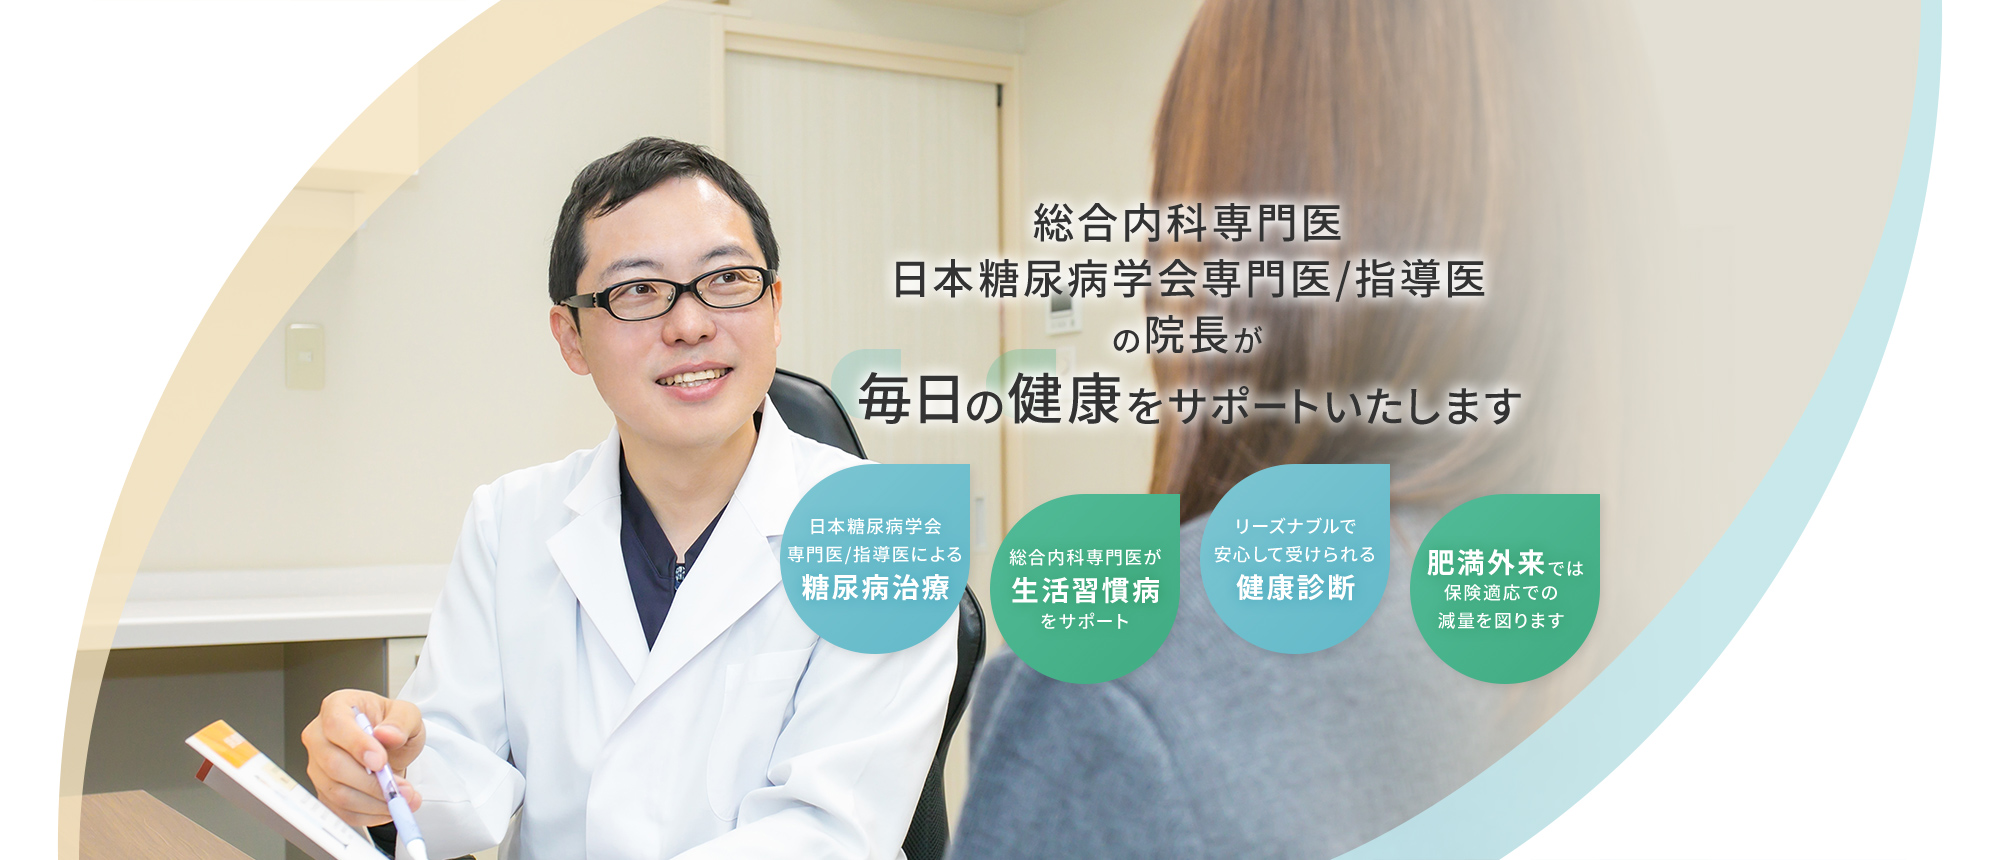 総合内科専門医日本糖尿病学会専門医/指導医の院長が毎日の健康をサポートいたします 毎日の健康をサポートいたします/総合内科専門医が生活習慣病をサポート/リーズナブルで安心して受けられる健康診断/リーズナブルで安心して受けられる健康診断